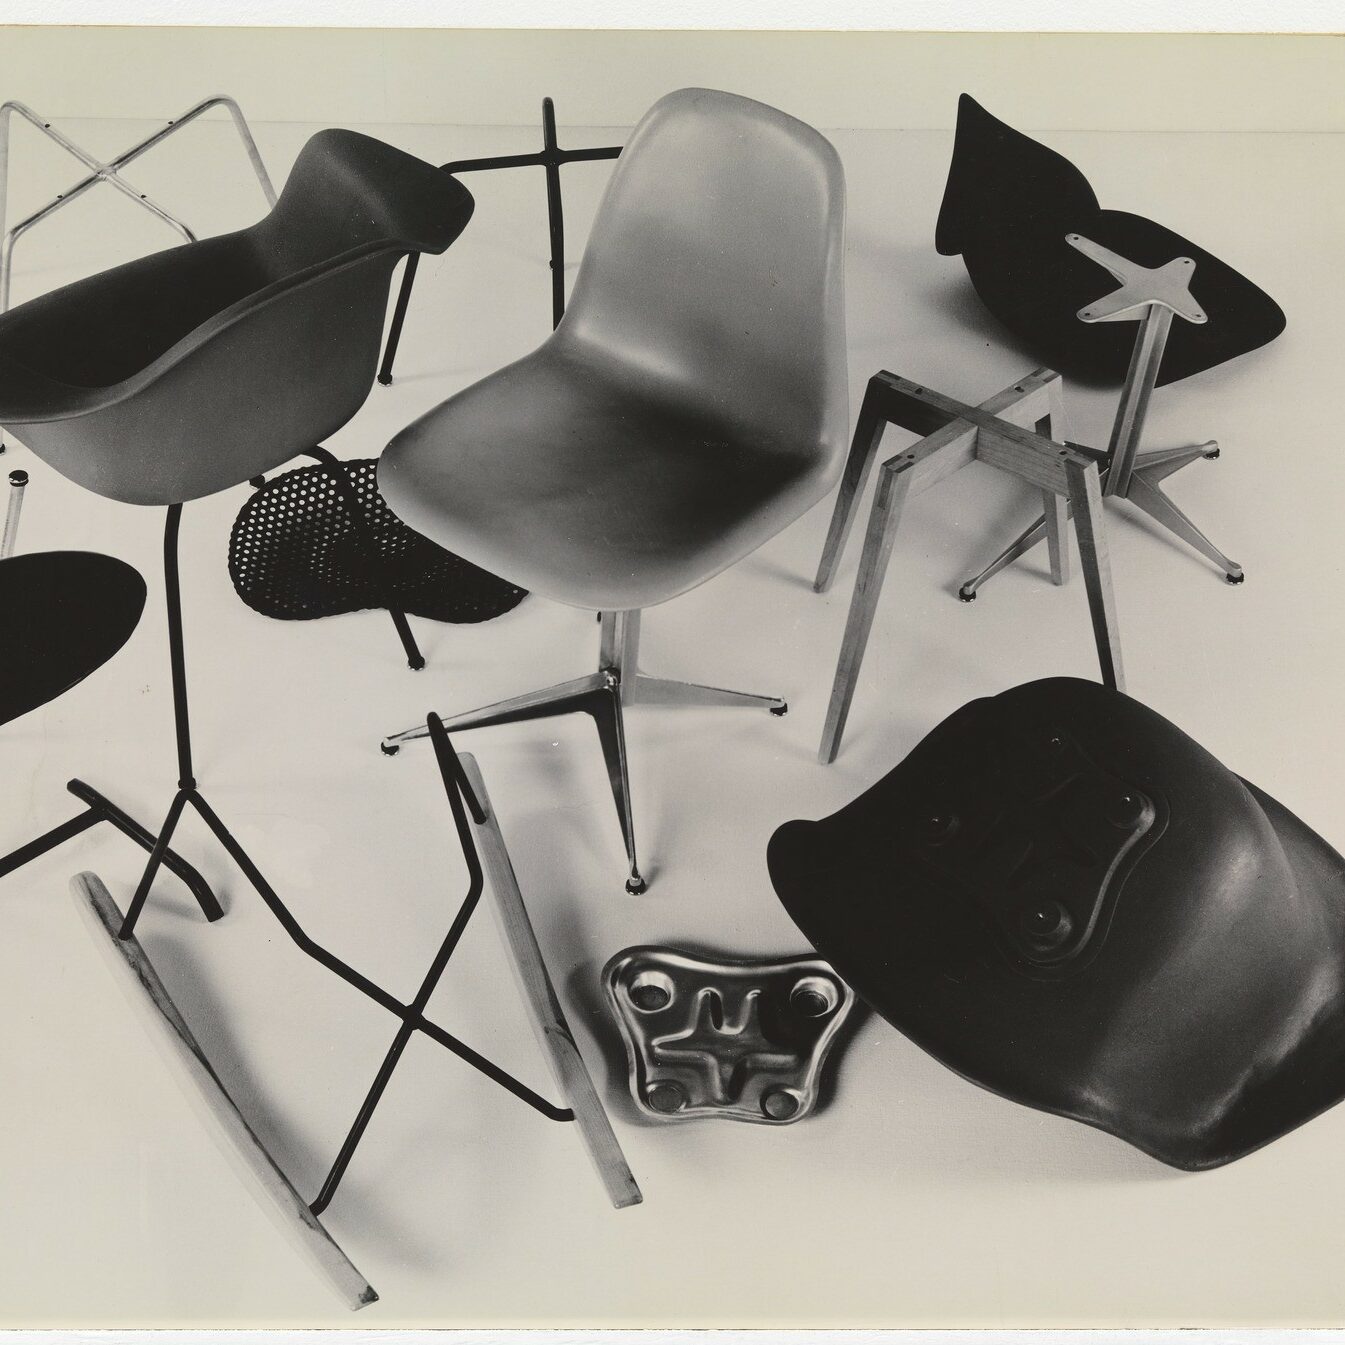 Eames Plastic Chair. Historia no contada de todas sus sillas de plastico